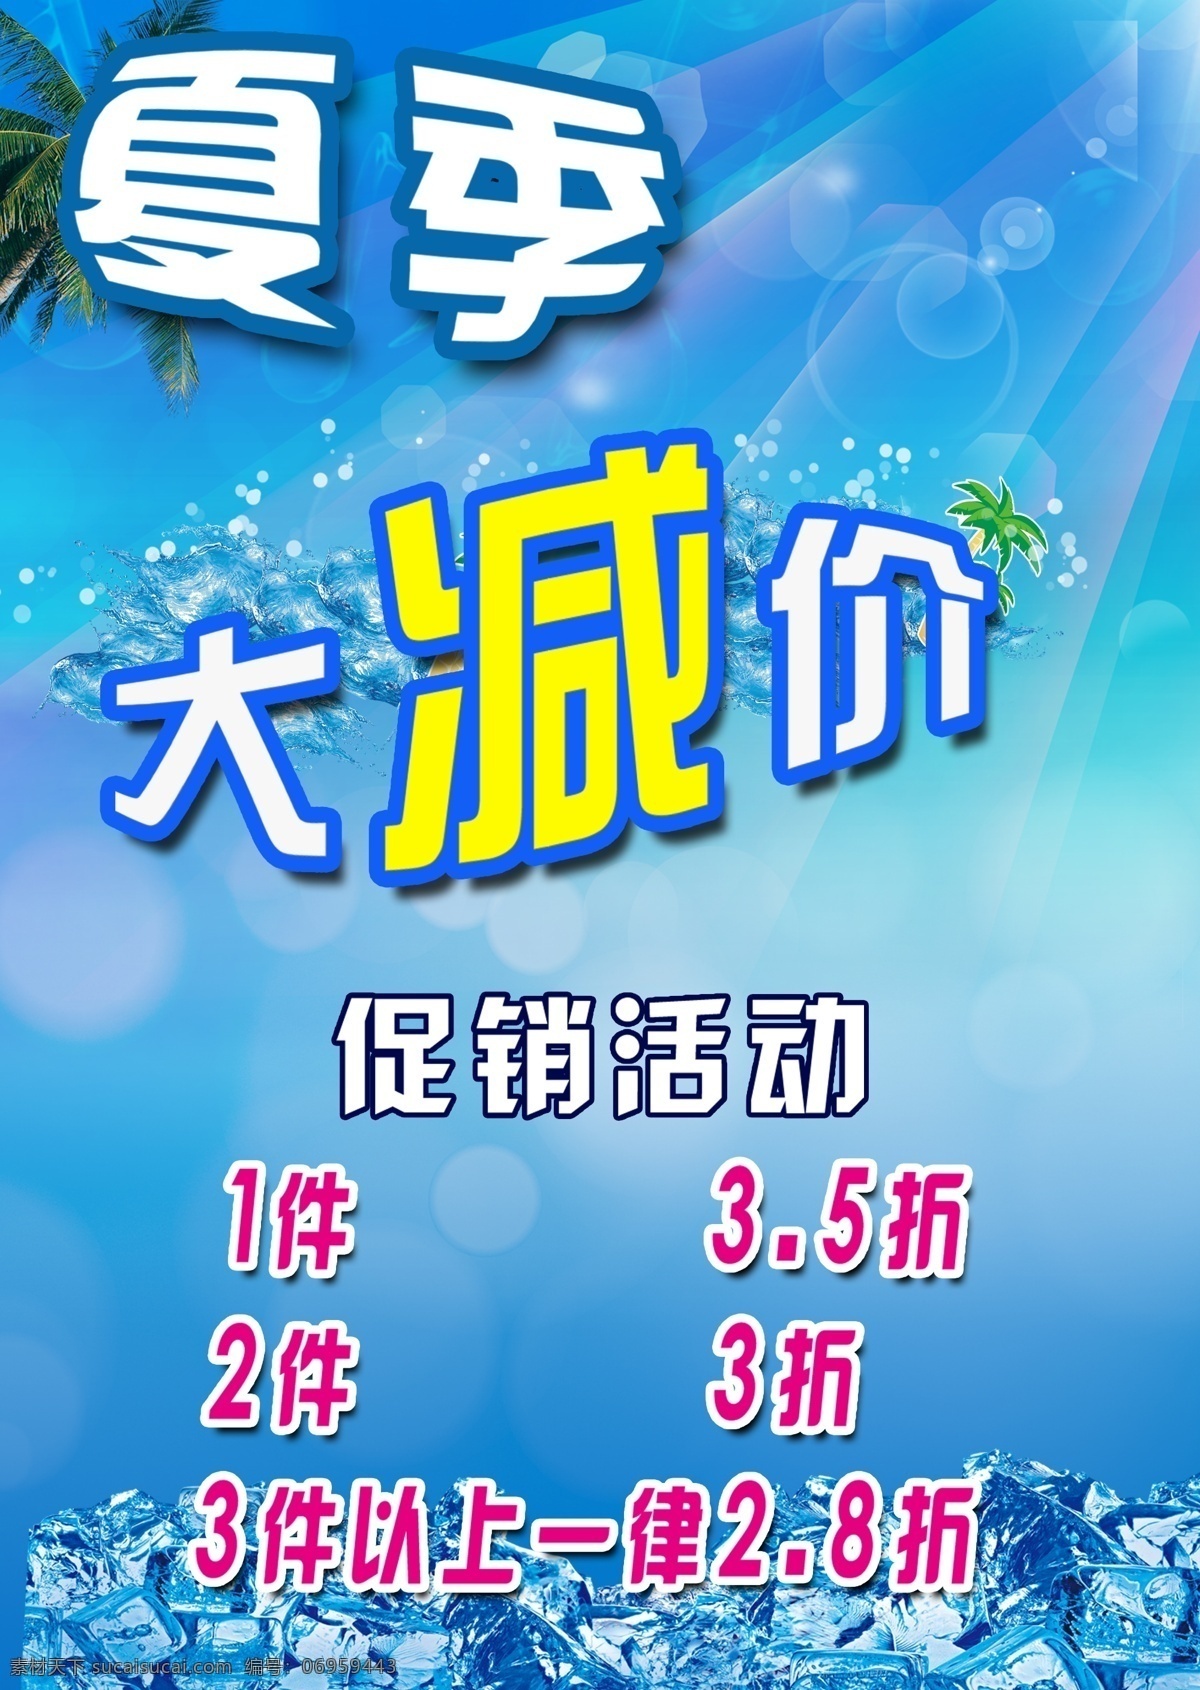 夏季 促销 宣传 广告 中文字 冰块 星光效果 椰树 阳光 泡泡效果 蓝色渐变背景